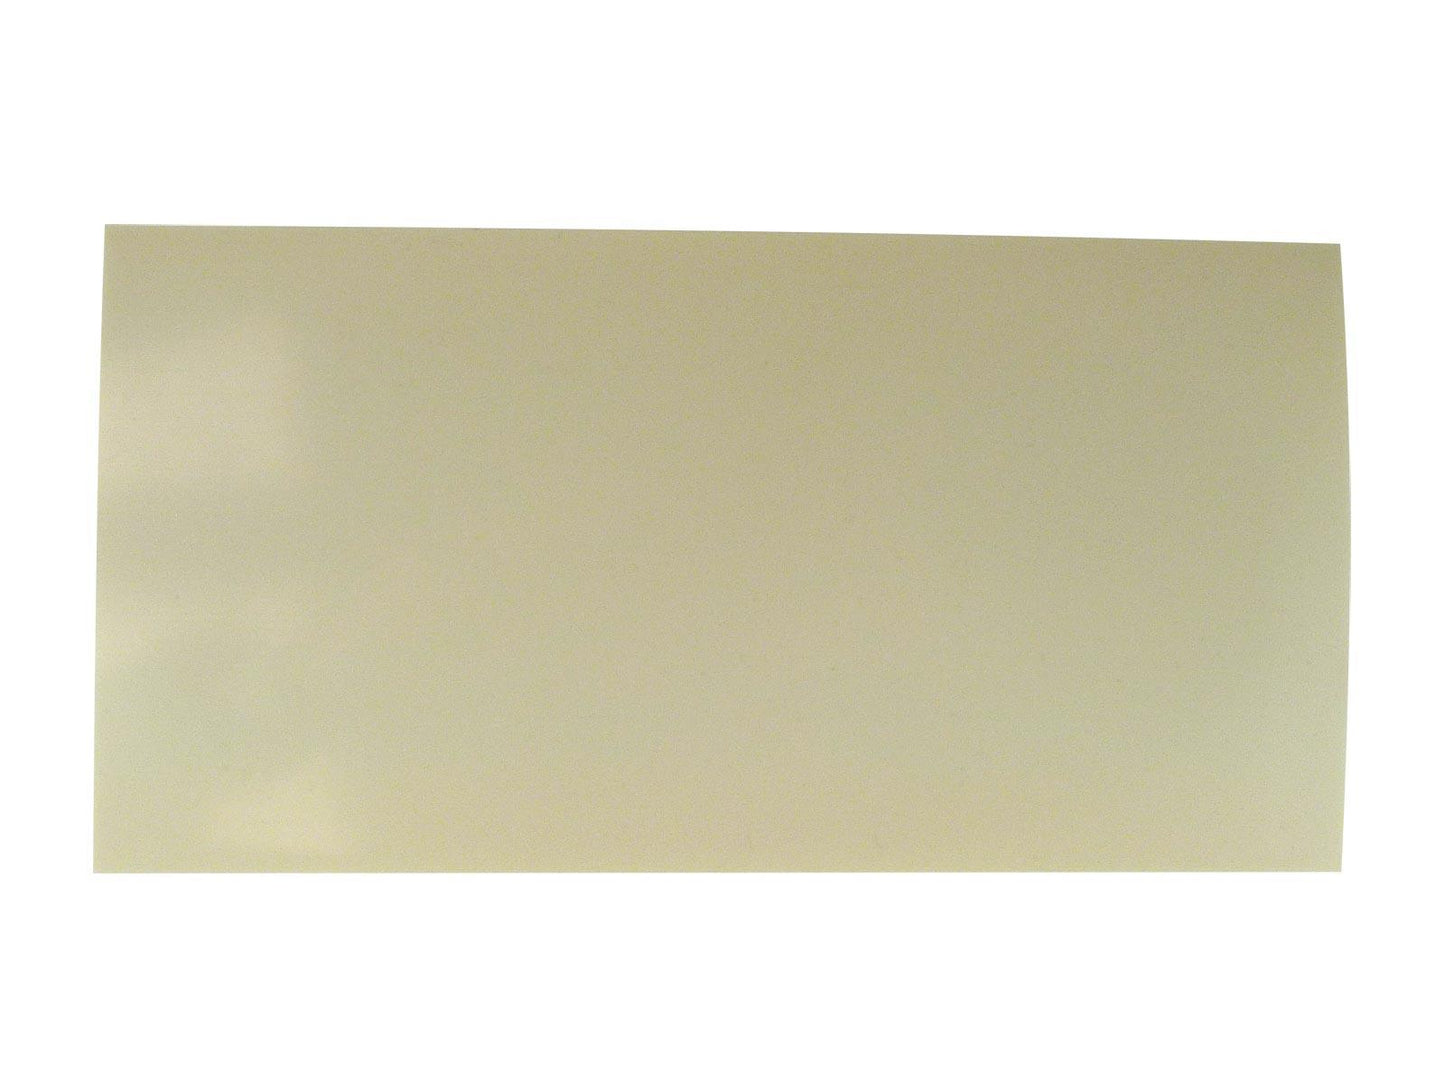 Incudo Parchment Plain CAB Sheet - 200x100x1.5mm (7.9x3.94x0.06")